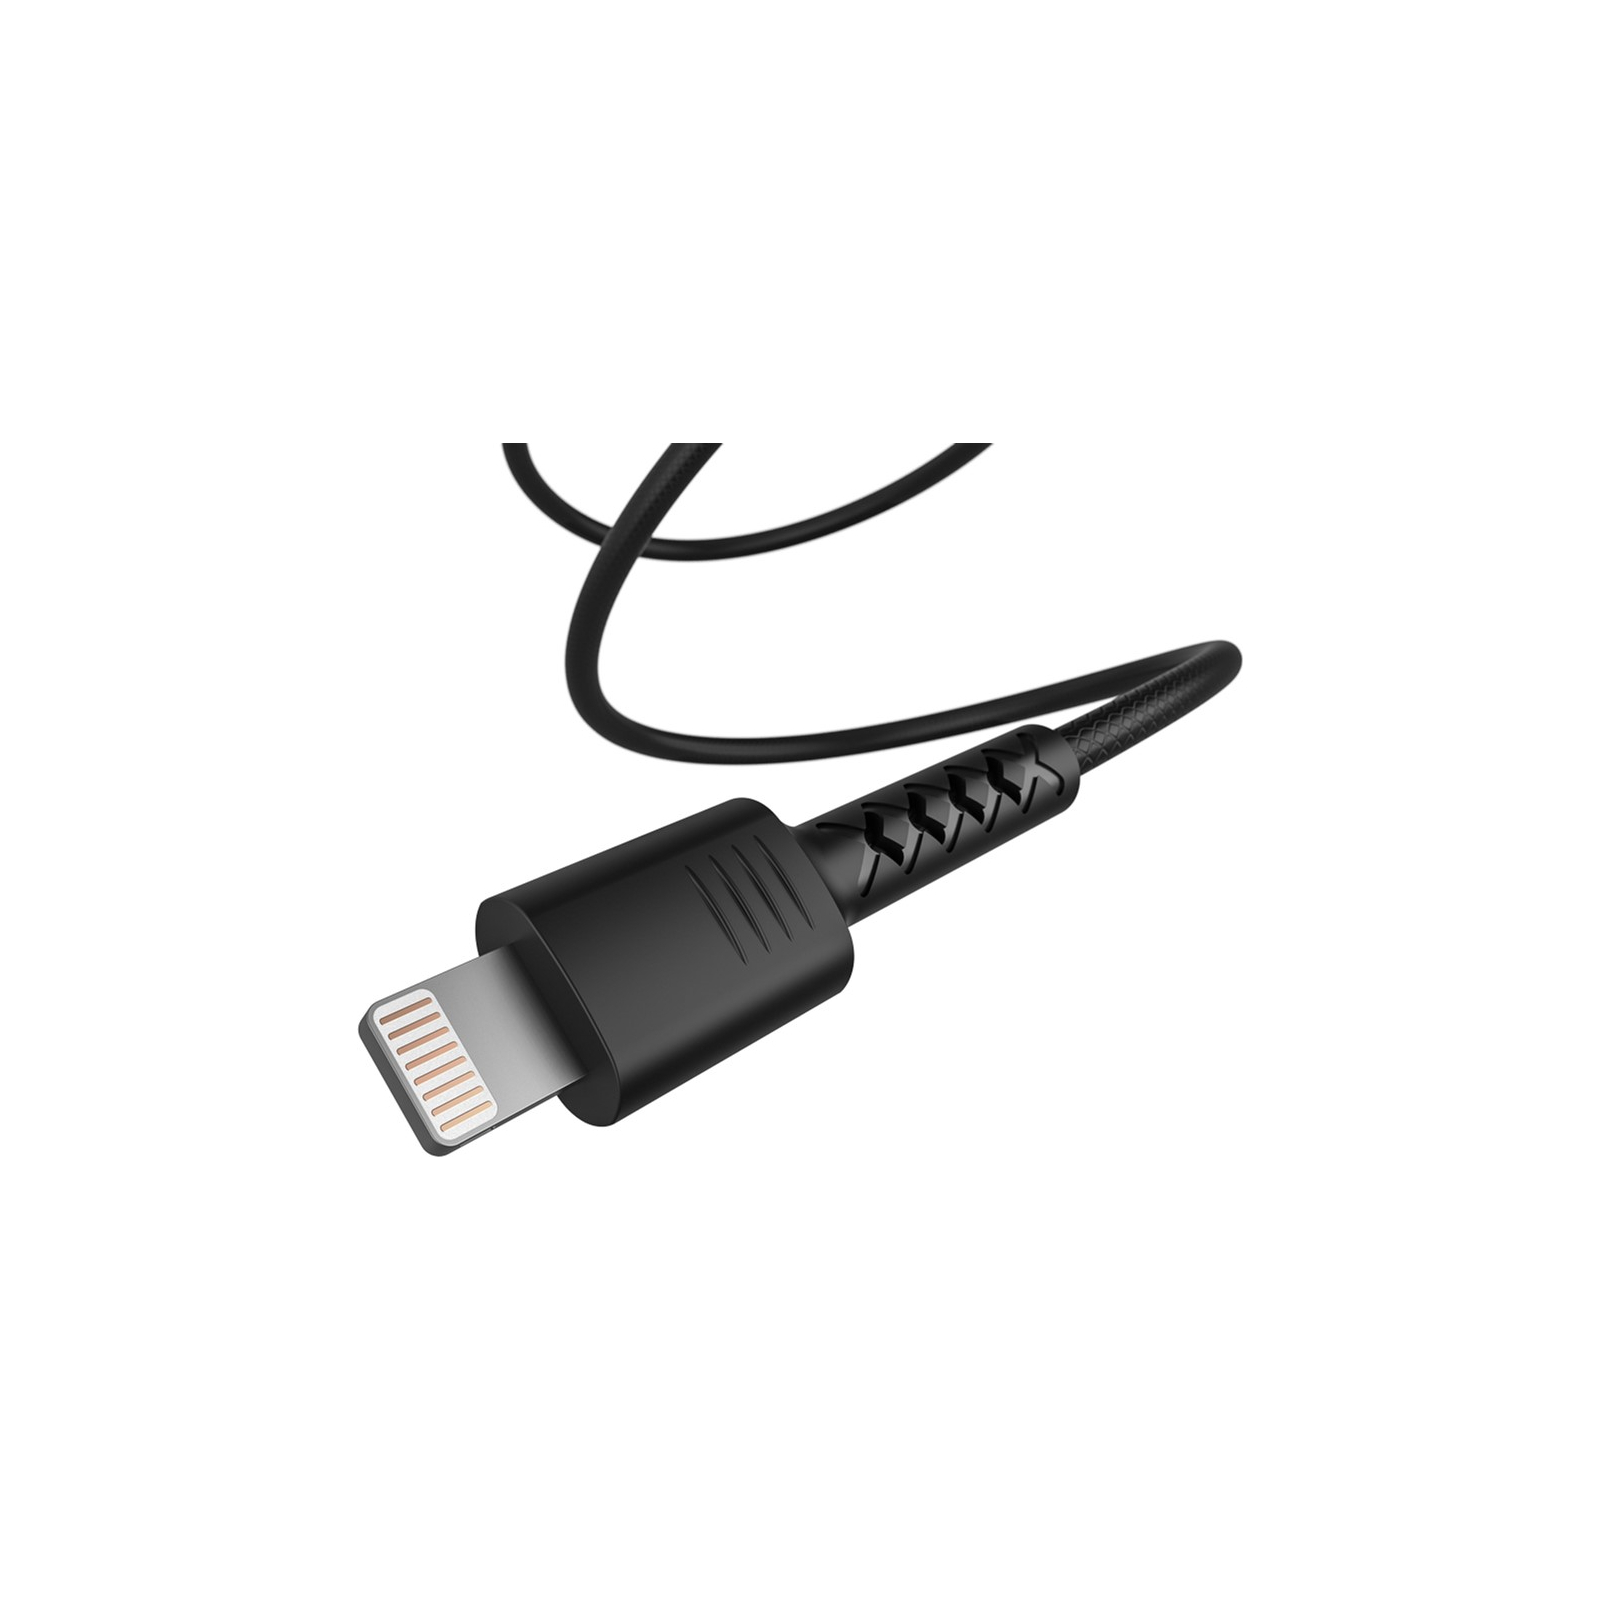 Дата кабель USB 2.0 AM to Lightning 1.0m Soft black Pixus (4897058530933) зображення 3